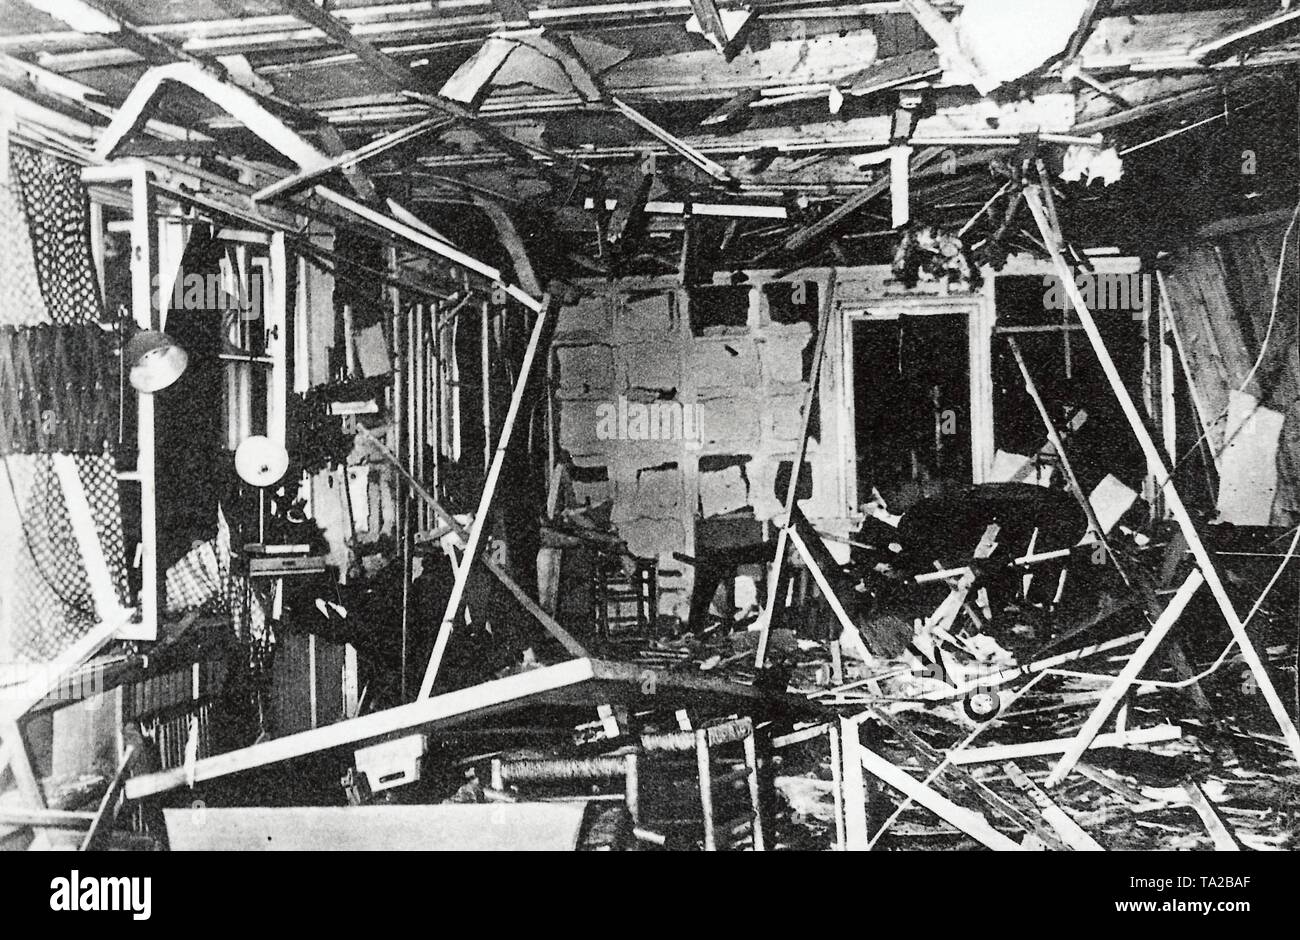 Die Szene des Attentats auf Hitler durch Oberst Stauffenberg am 20. Juli 1944, die den Briefing Room in Hitlers Hauptquartier "Wolf's Lair" in der Nähe von Rastenburg in Ostpreußen zerstört. Der kleine Kreis mit einem Pfeil zeigt die Position von Adolf Hitler zum Zeitpunkt der Explosion. Stockfoto